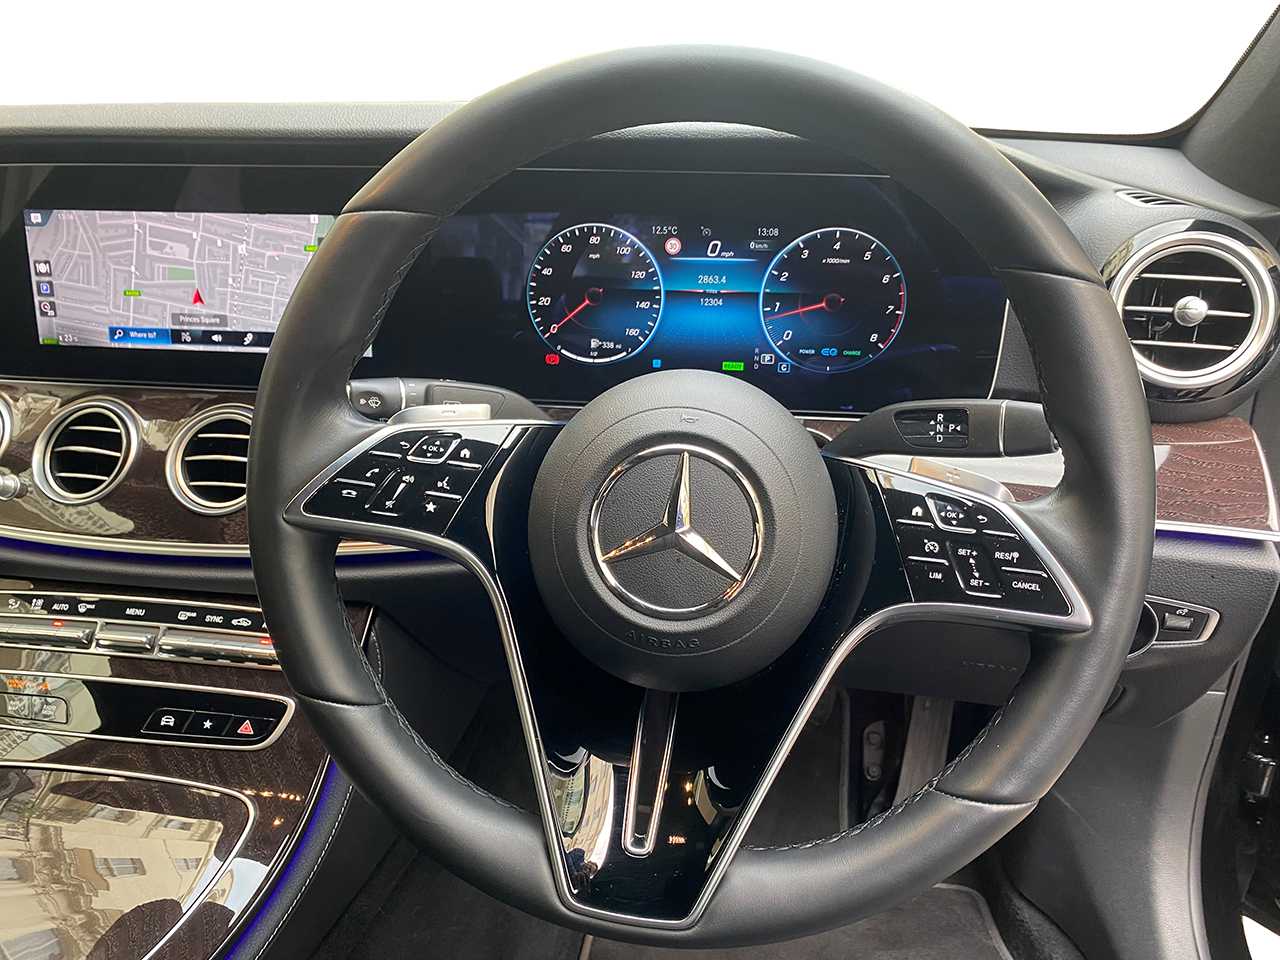 Mercedes benz E-Class steering focus view